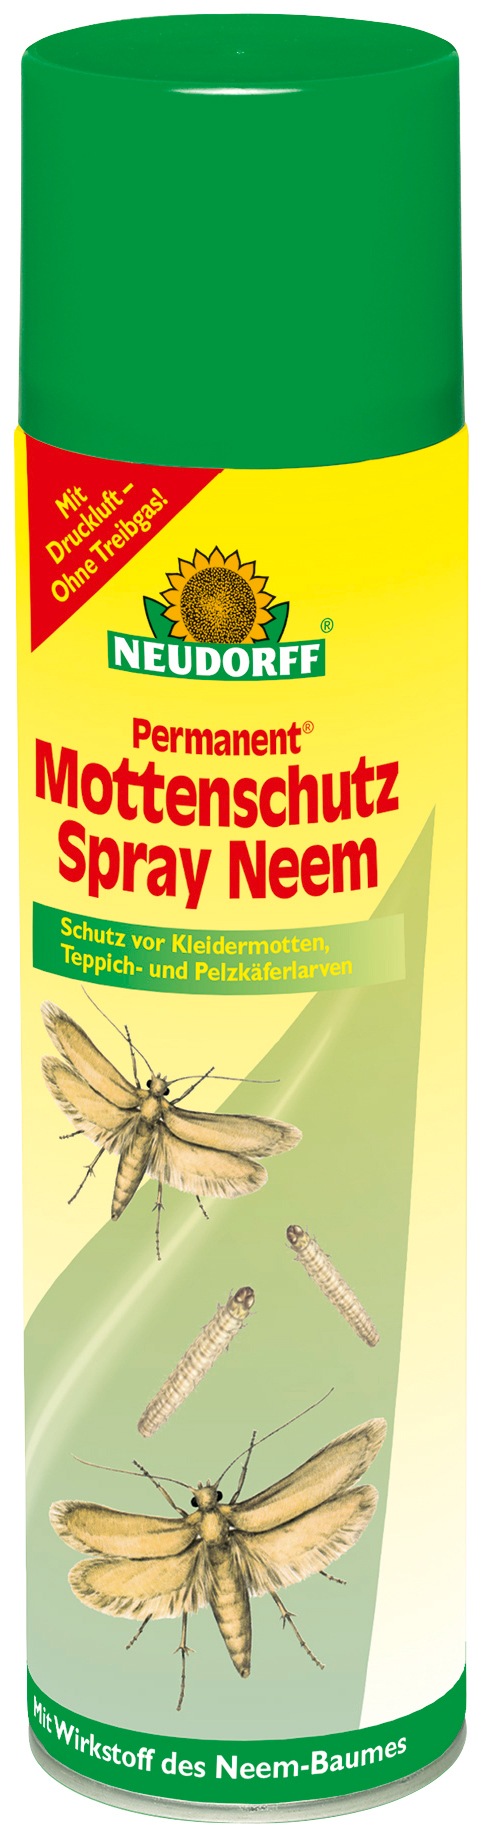 Neudorff Insektenspray Permanent Mottenschutz Spray Neem bunt Zubehör Pflanzen Garten Balkon